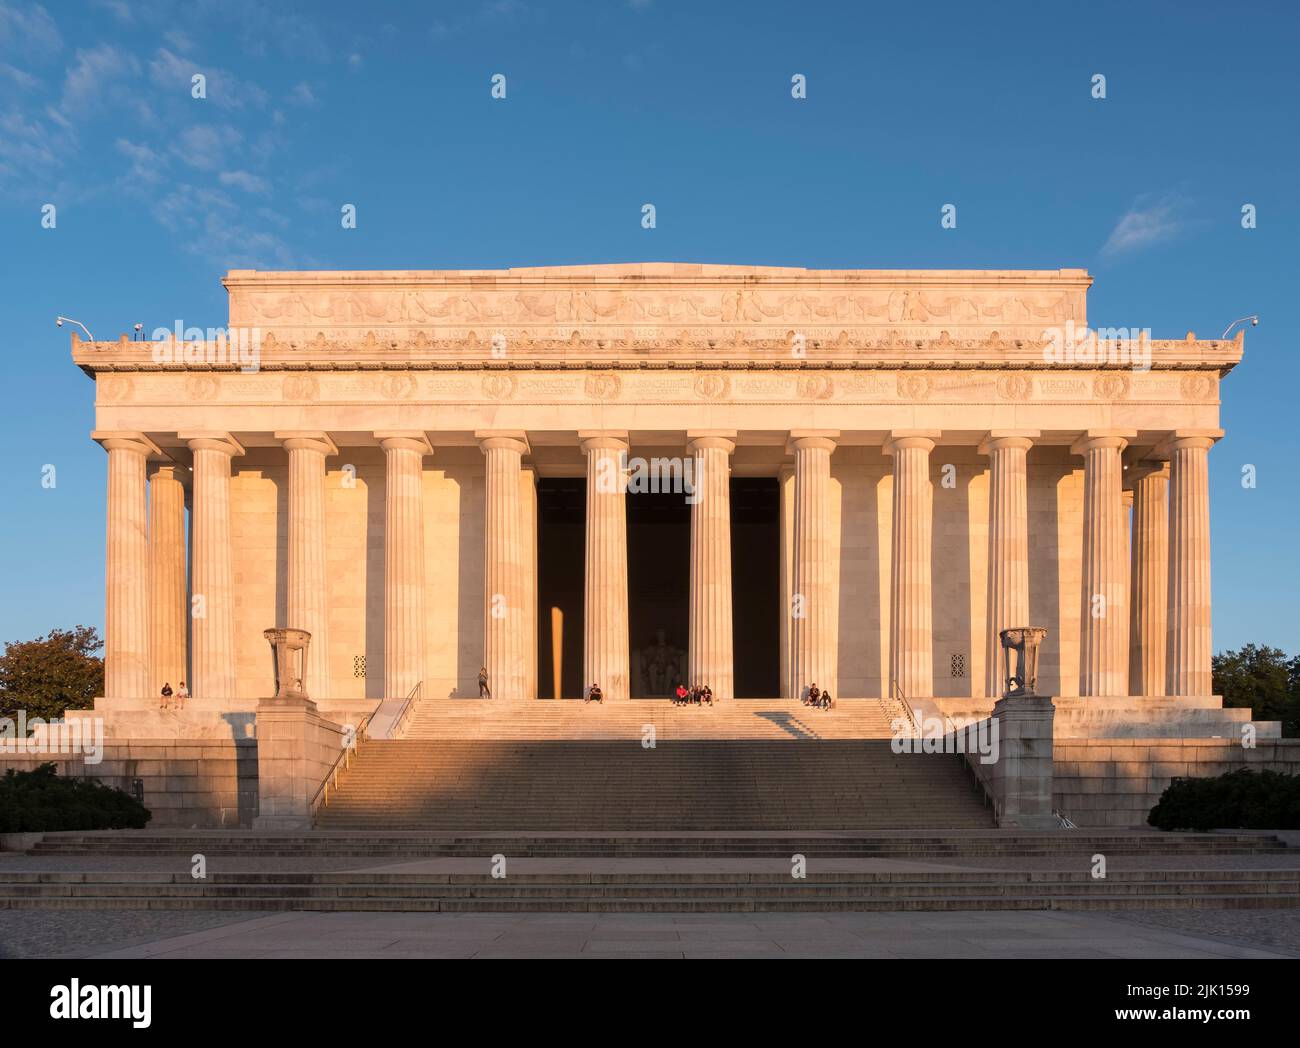 The Lincoln Memorial, National Mall, Washington DC, États-Unis d'Amérique, Amérique du Nord Banque D'Images